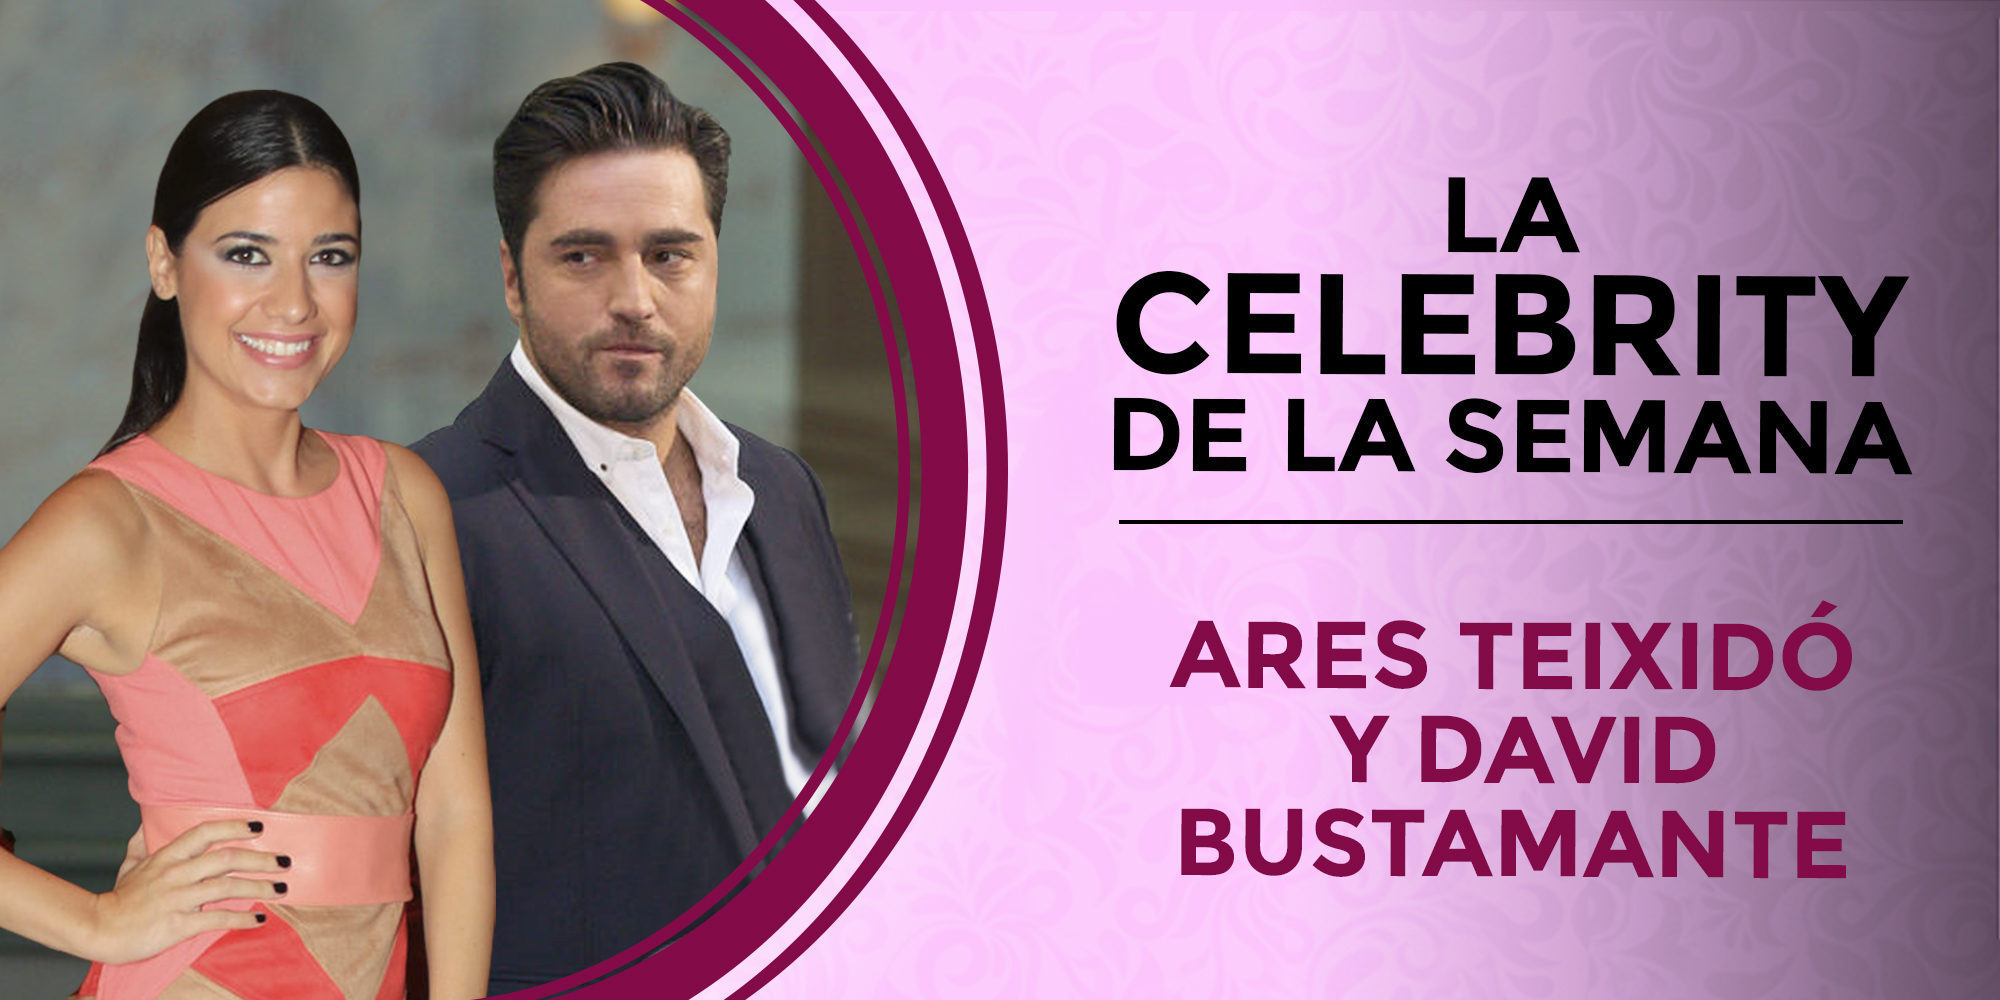 David Bustamante y Ares Teixidó, las celebrities de la semana por su romance confirmado y desmentido